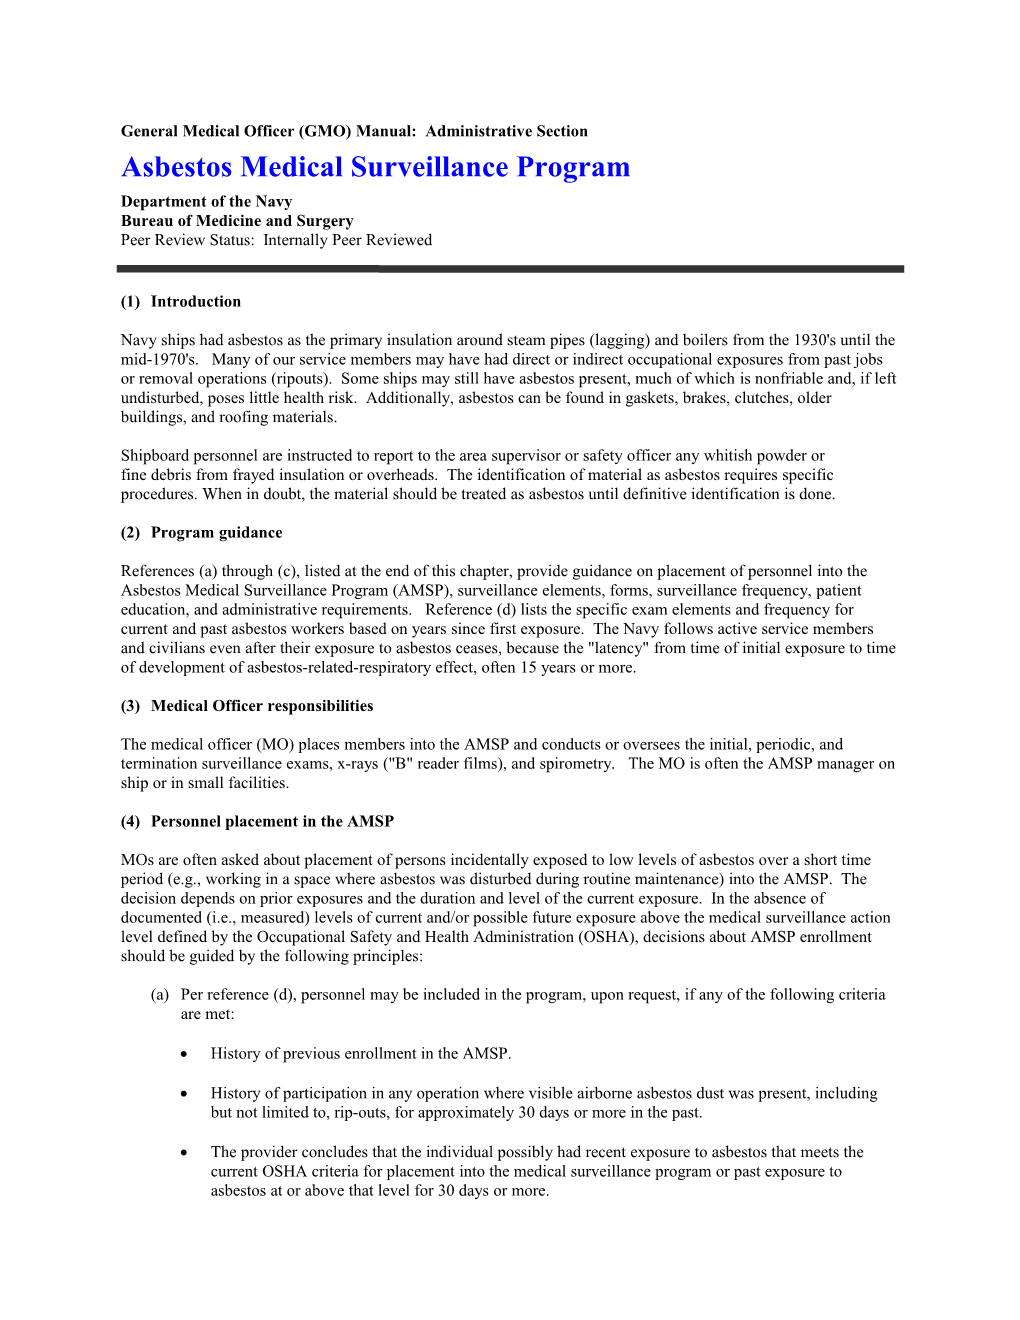 General Medical Officer (GMO) Manual: Asbestos Medical Surveillance Program